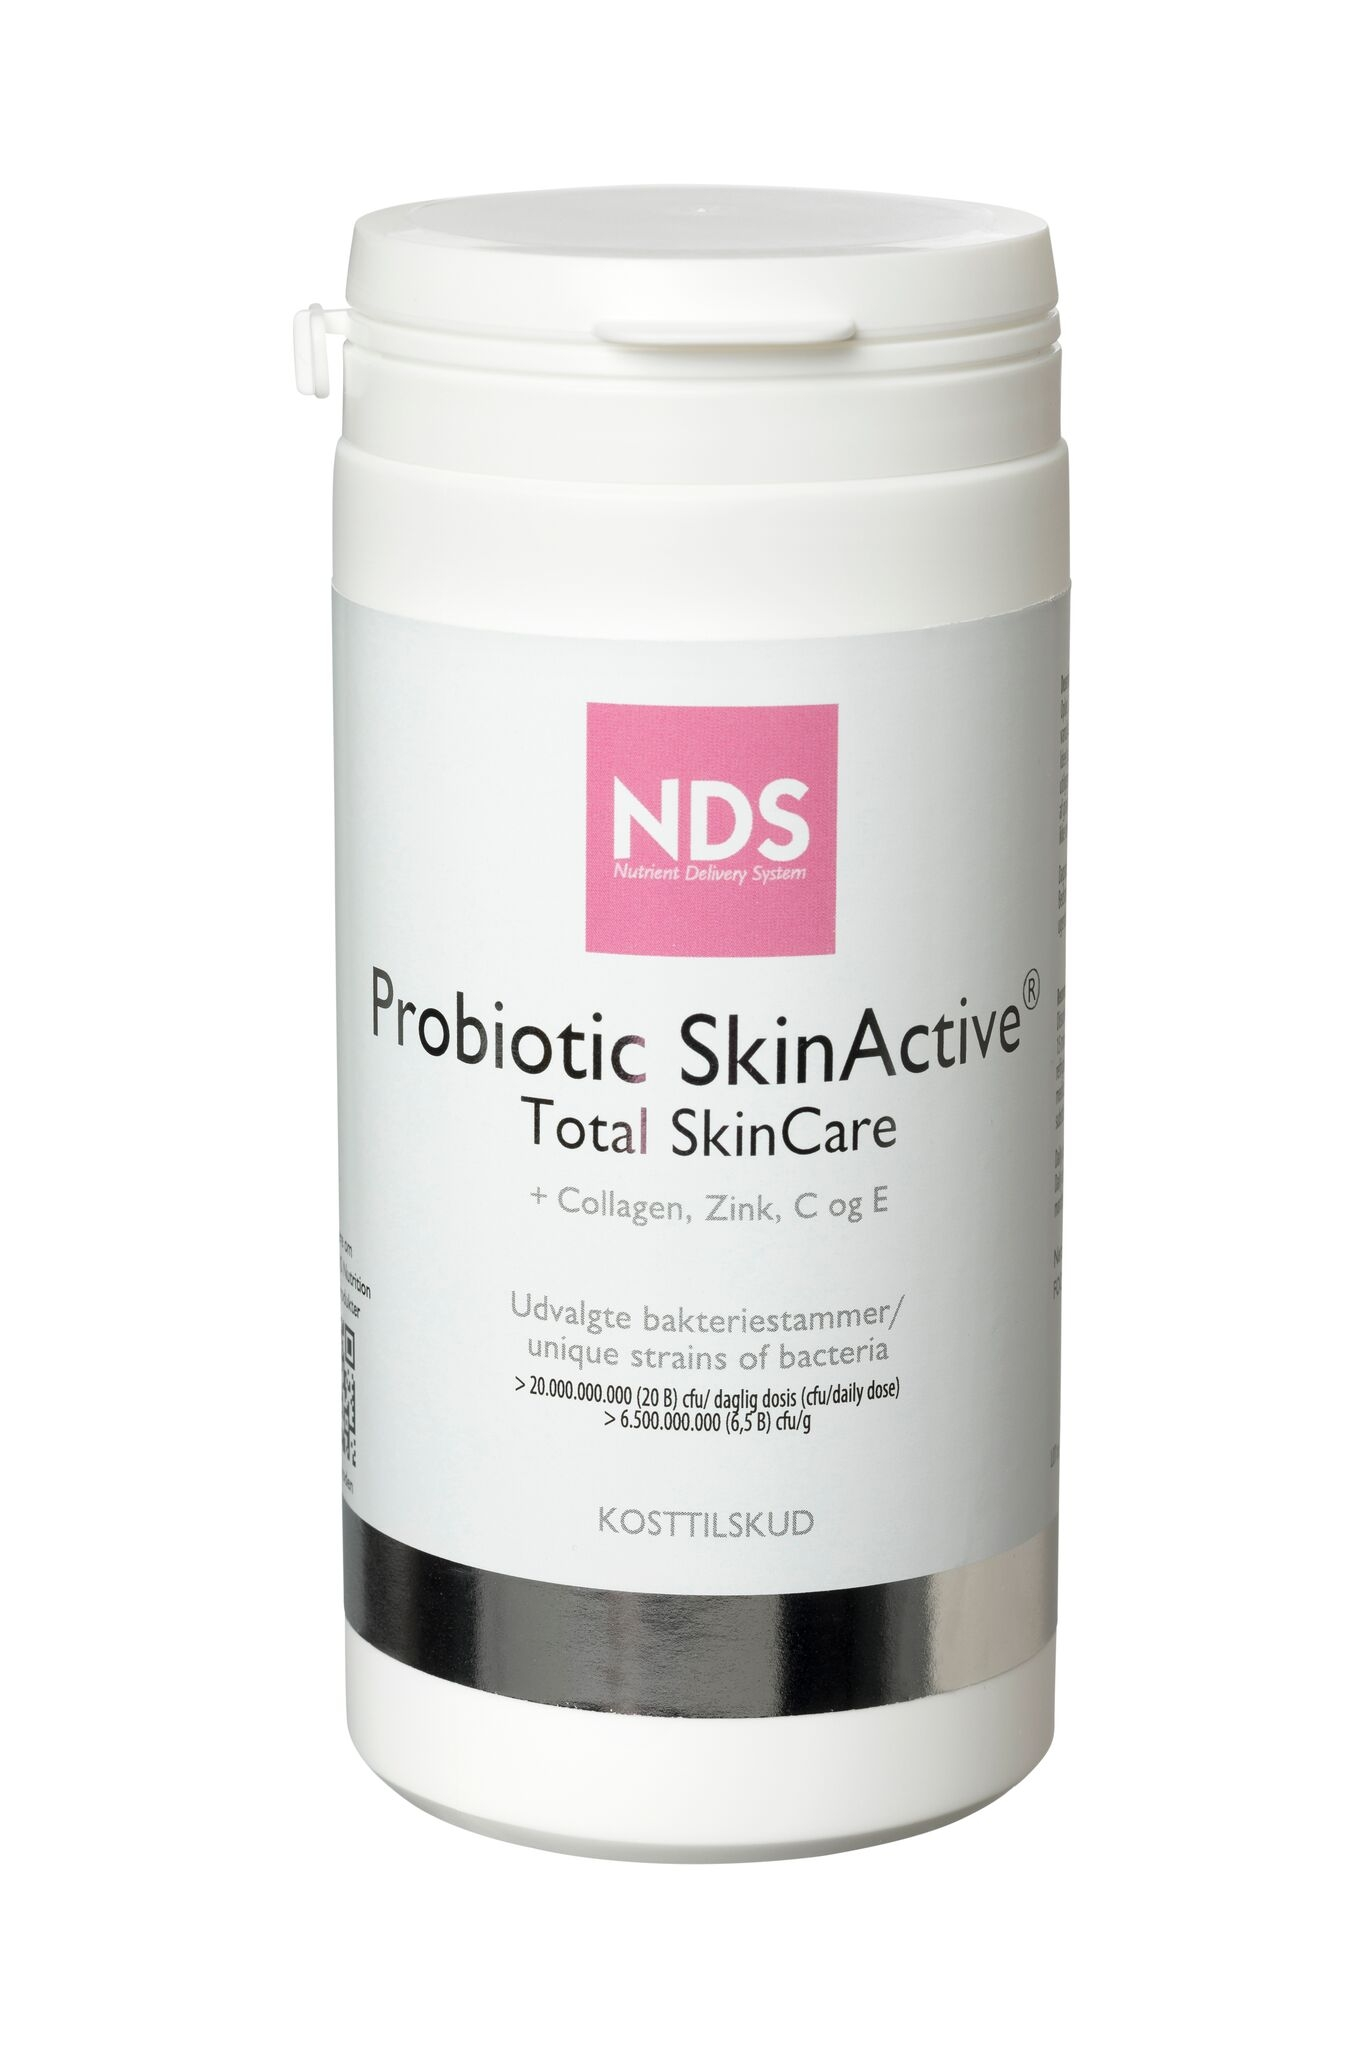 Se NDS Probiotic Skin Active Total Skincare (175 g) hos Well.dk